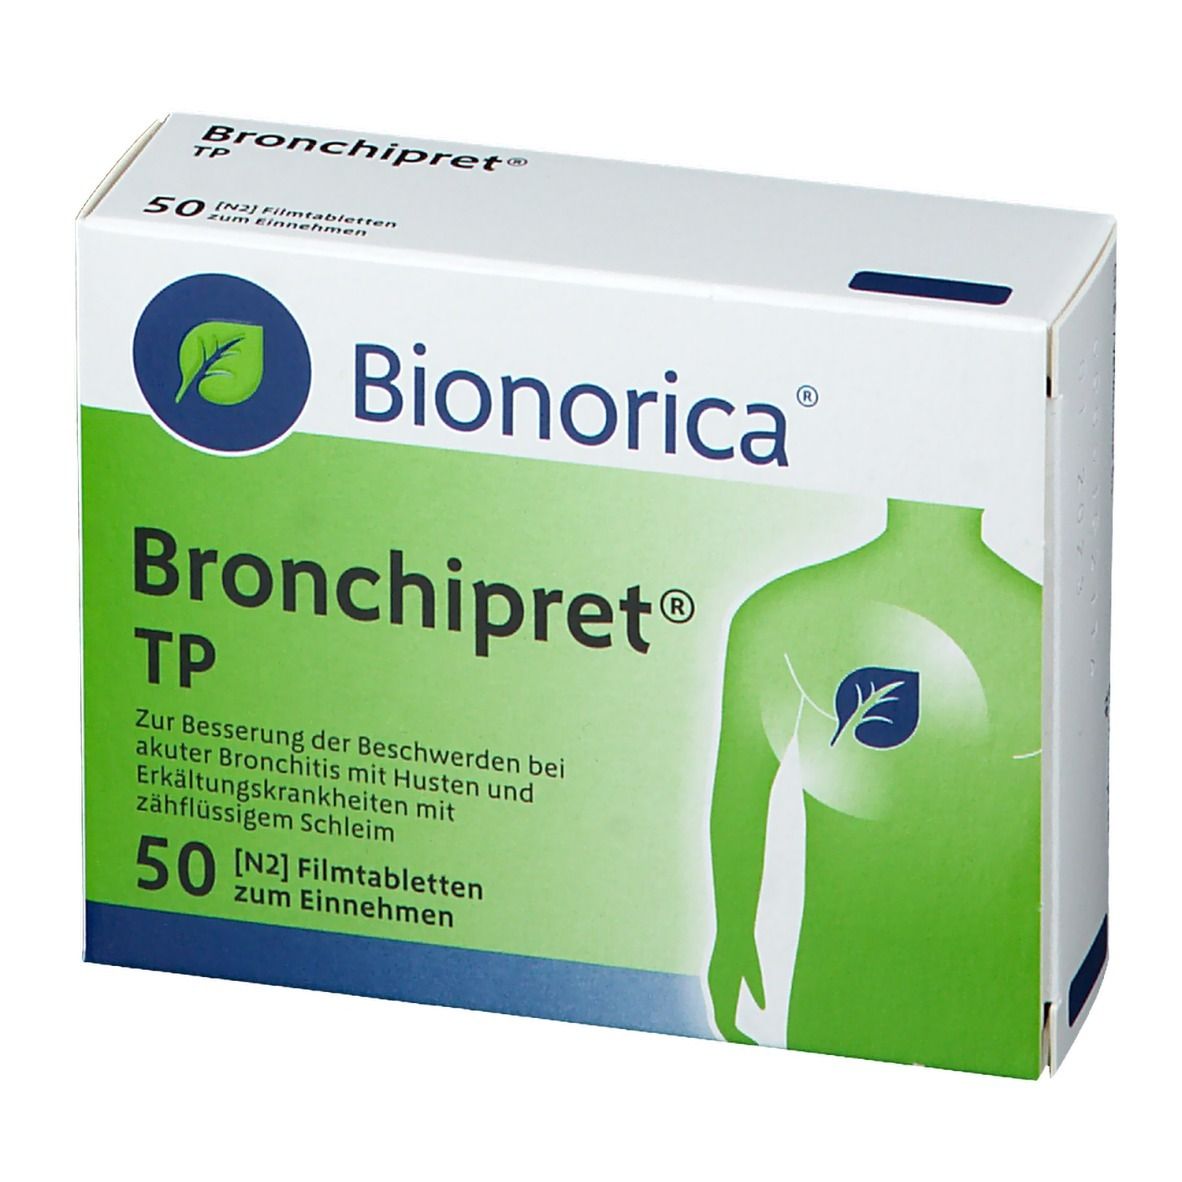 Bronchipret® TP